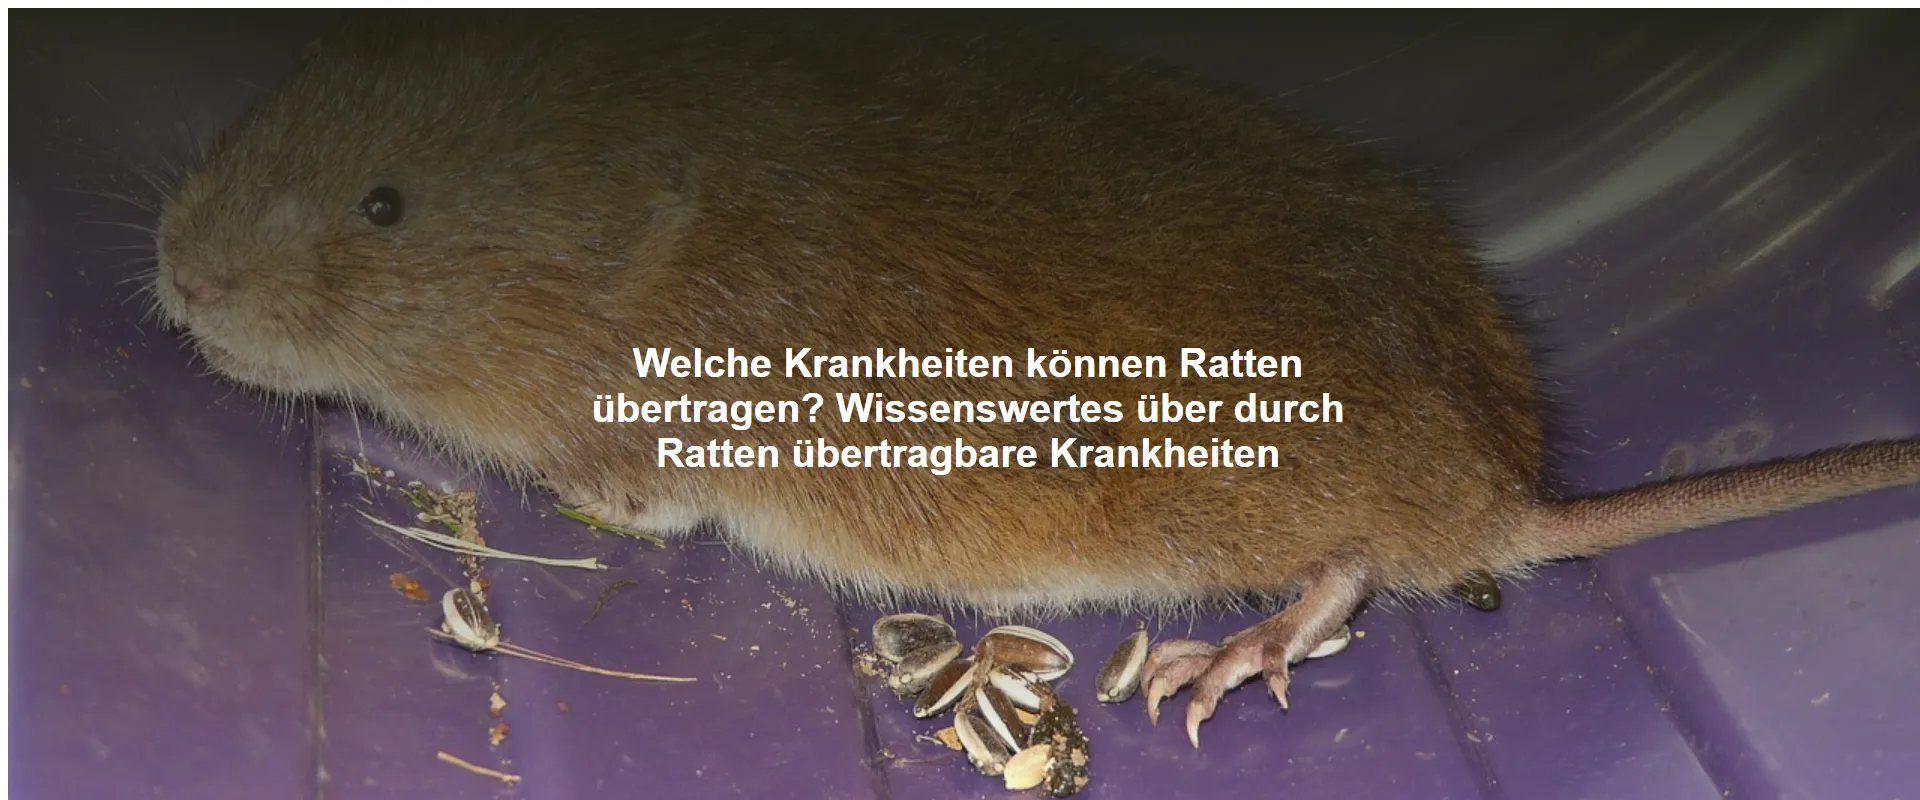 Welche Krankheiten können Ratten übertragen? Wissenswertes über durch Ratten übertragbare Krankheiten